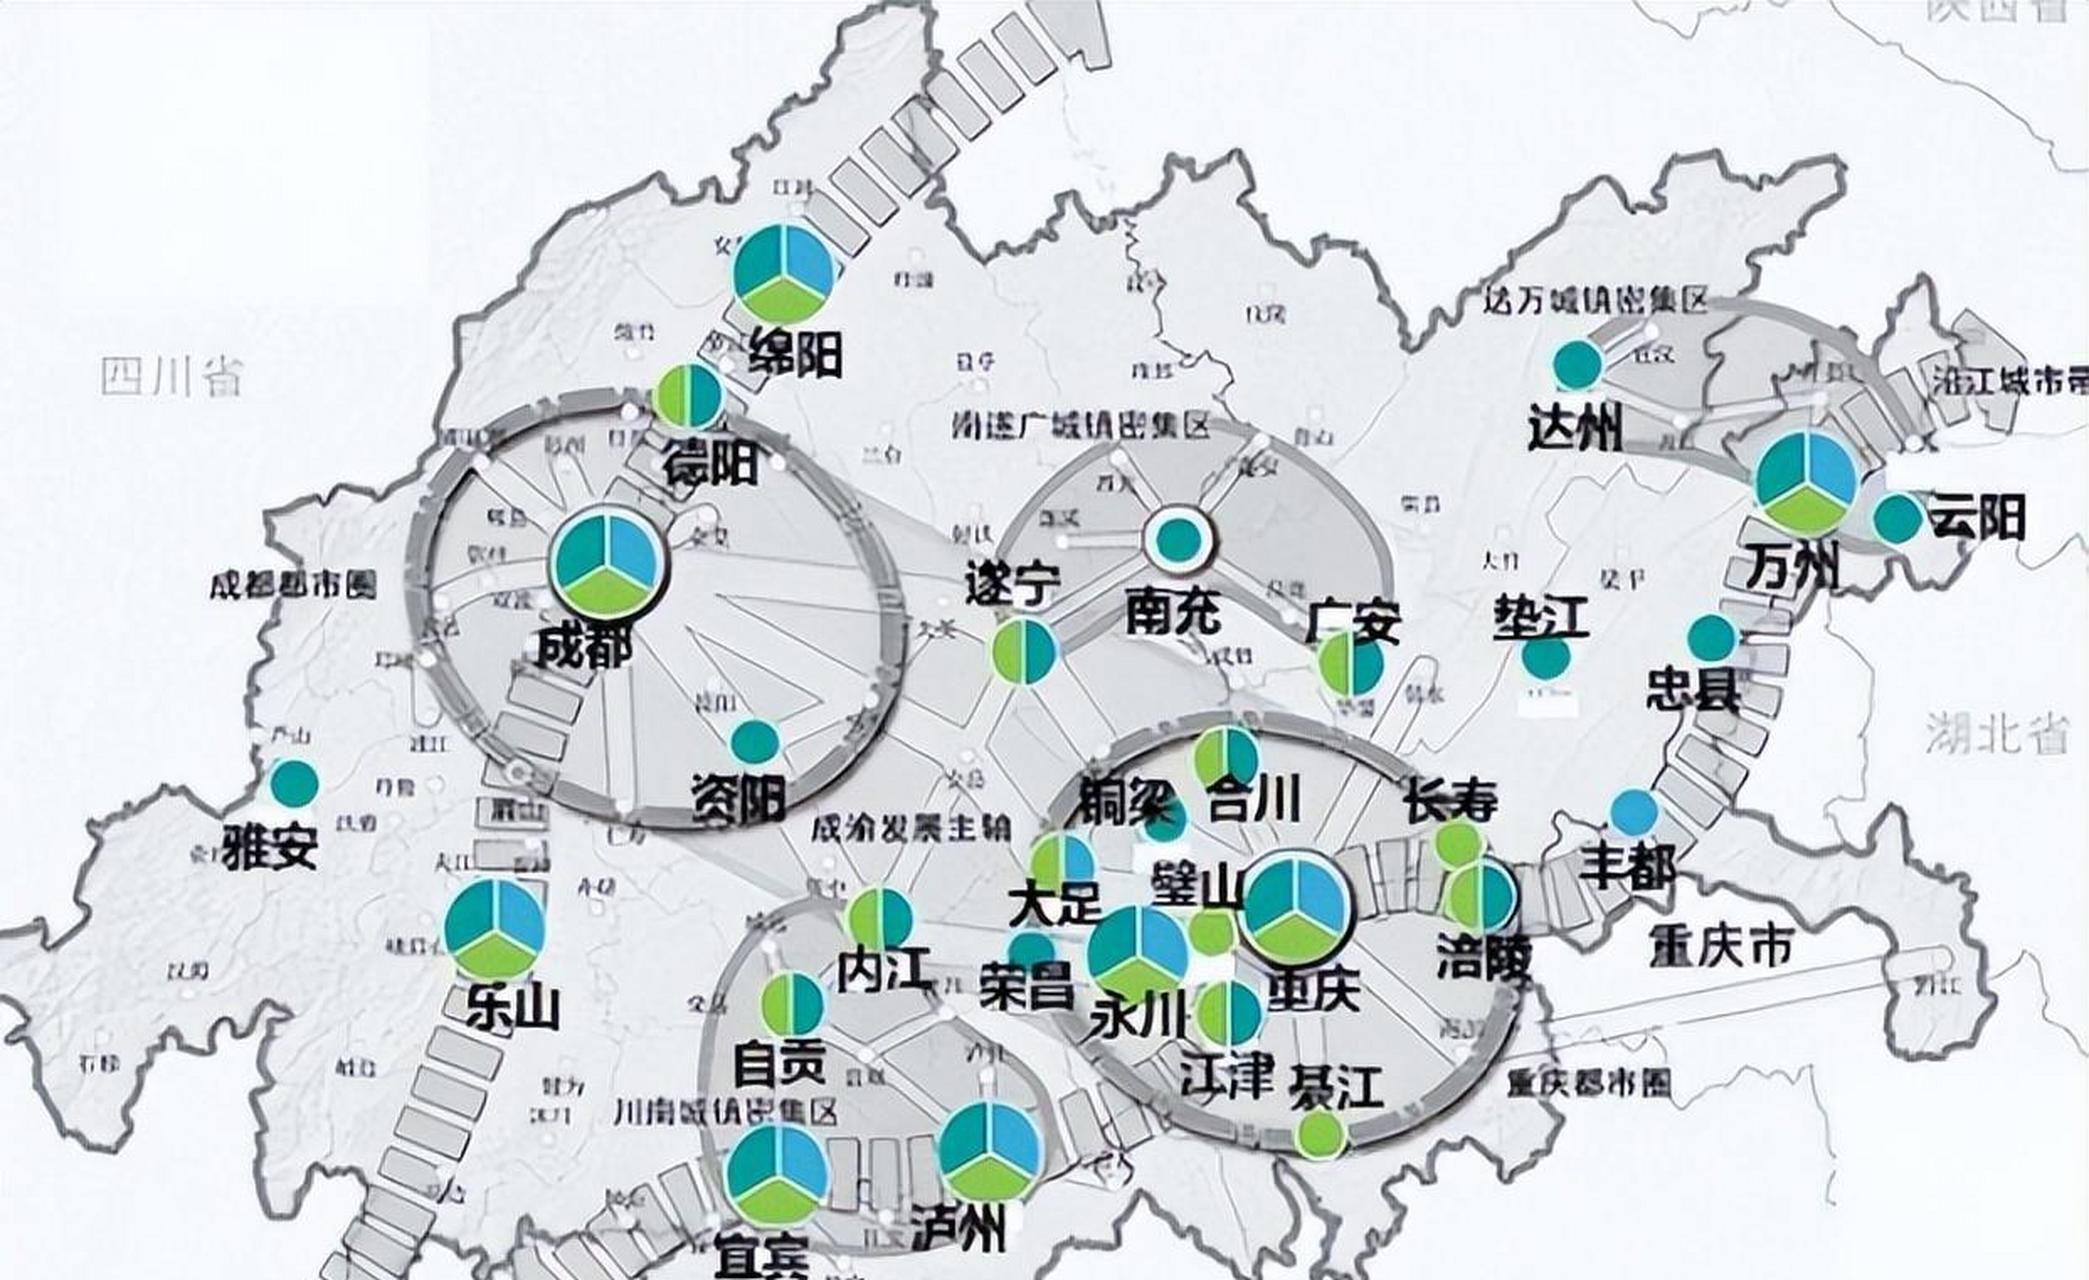 近日,新版重庆都市圈规划正式发布,该规划提出了一系列关于城市发展和